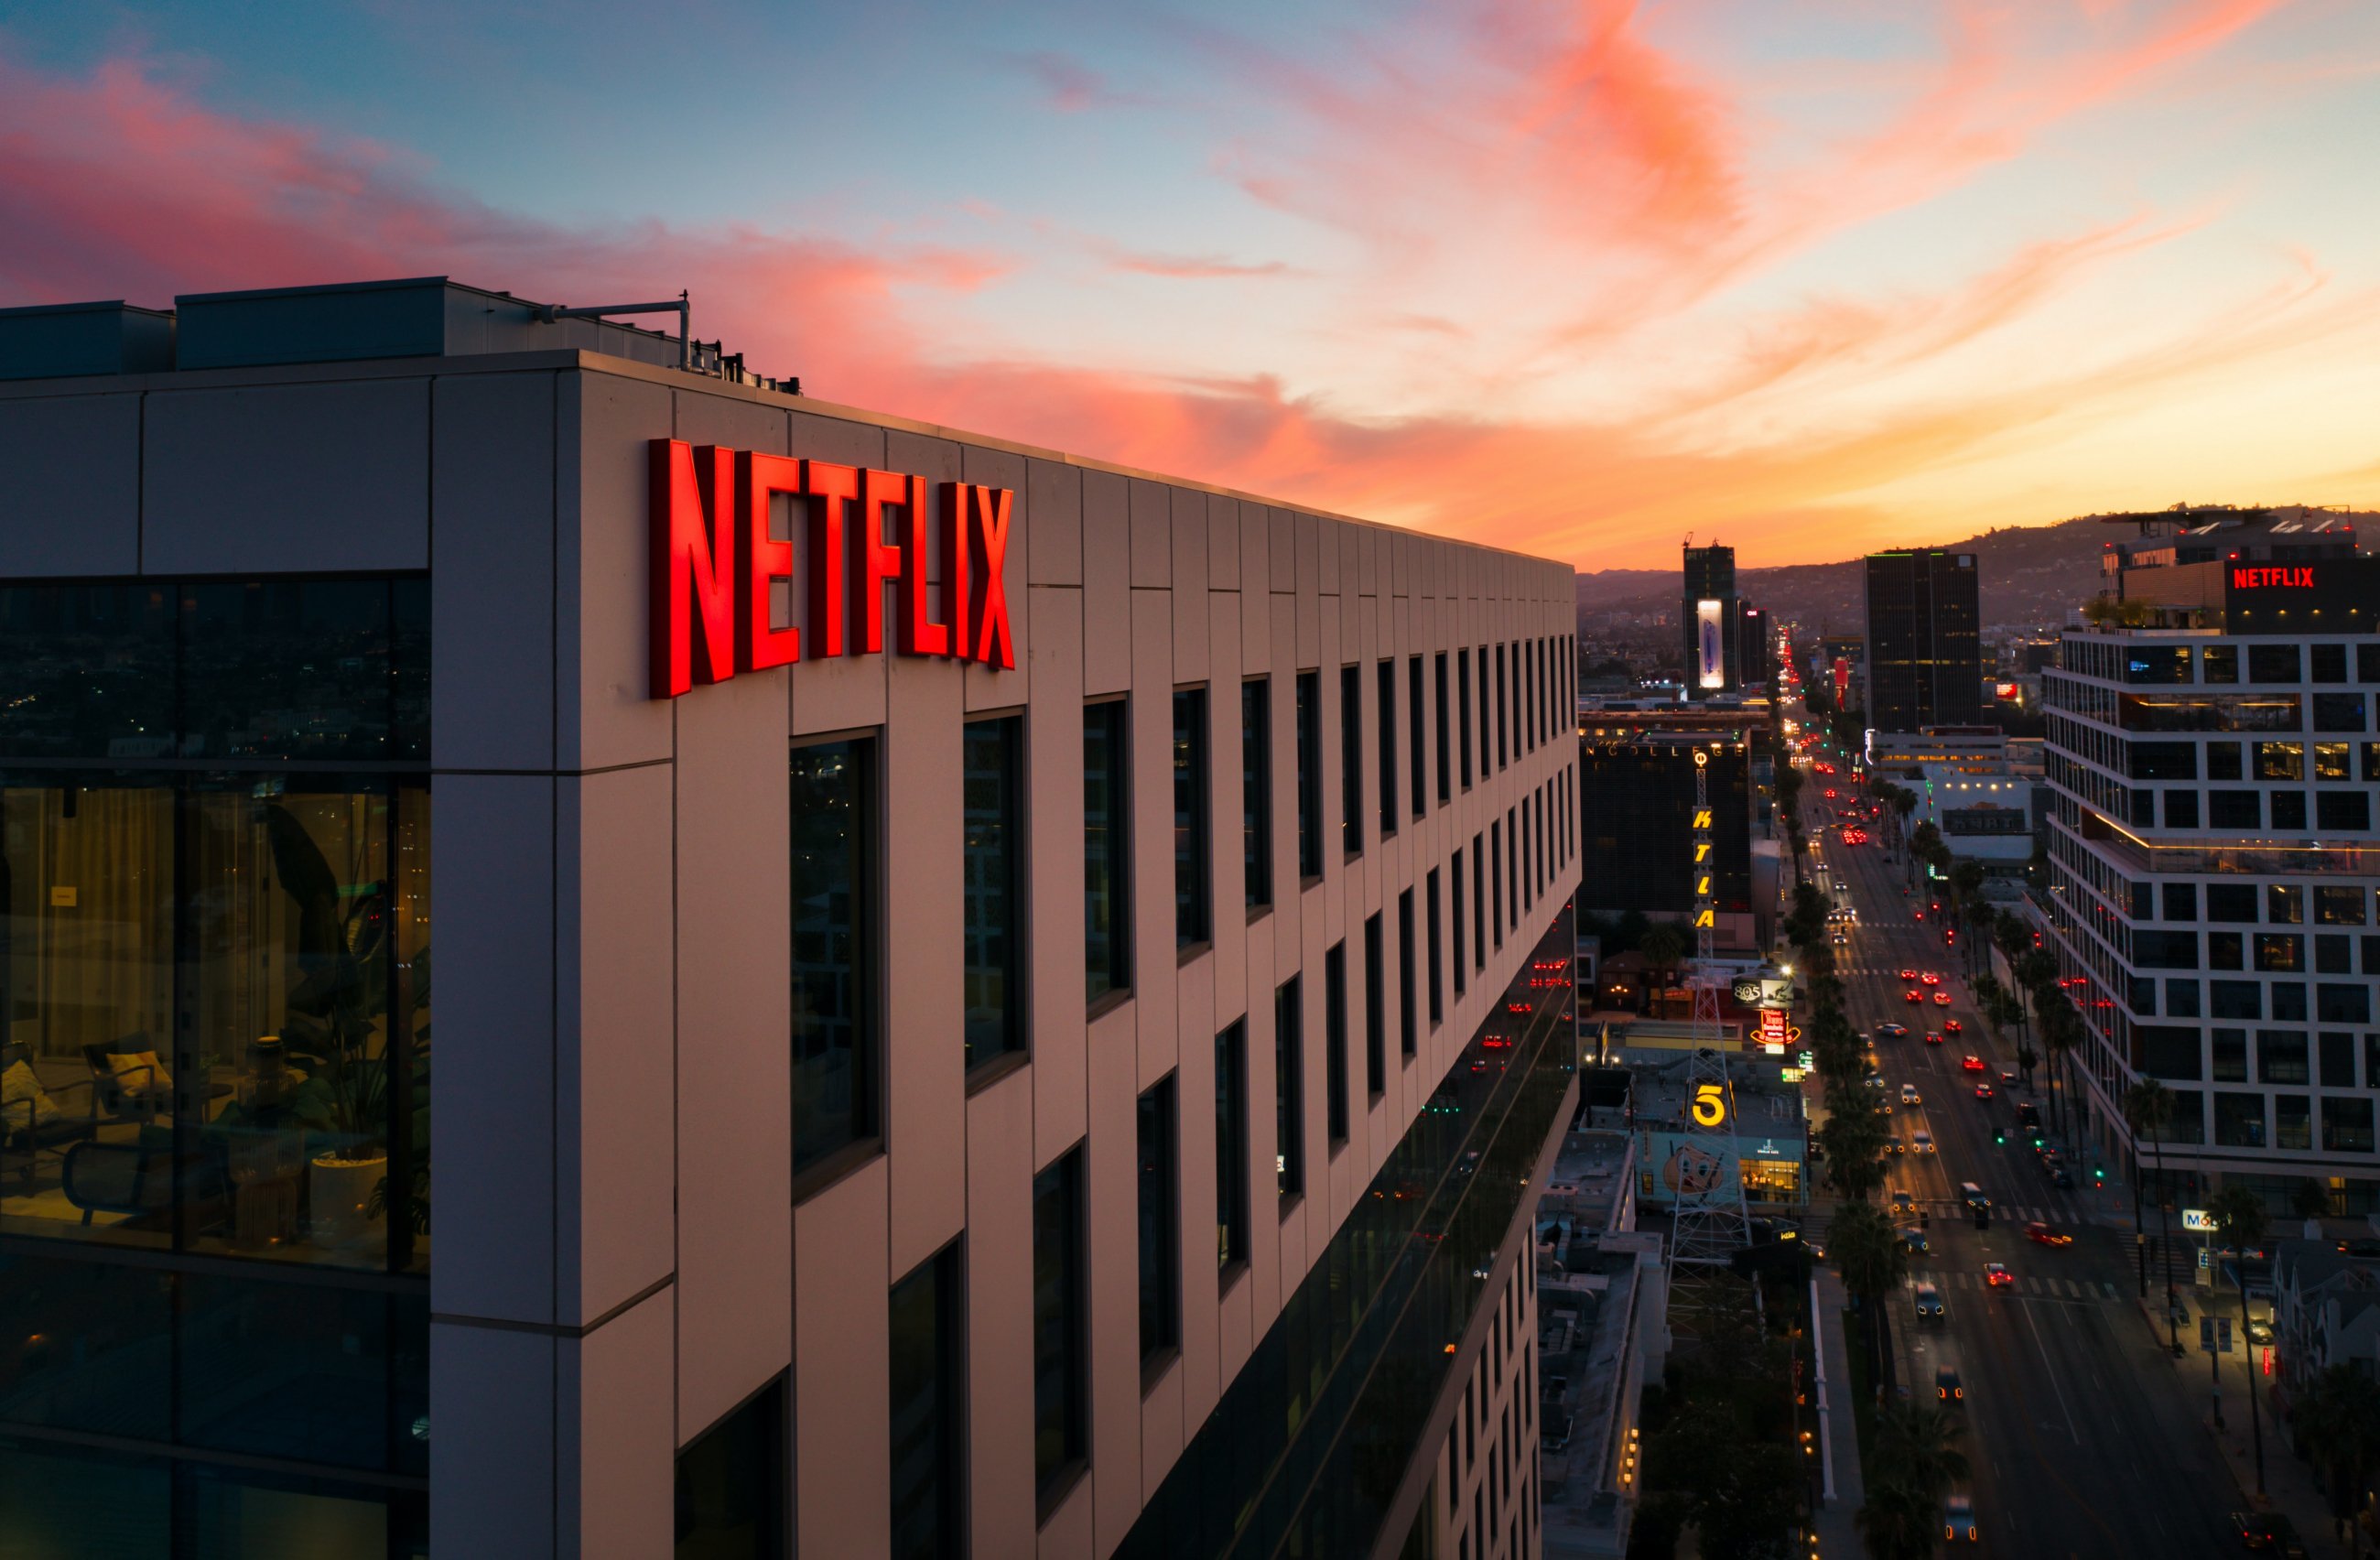 Співробітники стрімінгів Netflix, Apple TV + і Amazon Prime вирішили влаштувати страйк через погані умови праці